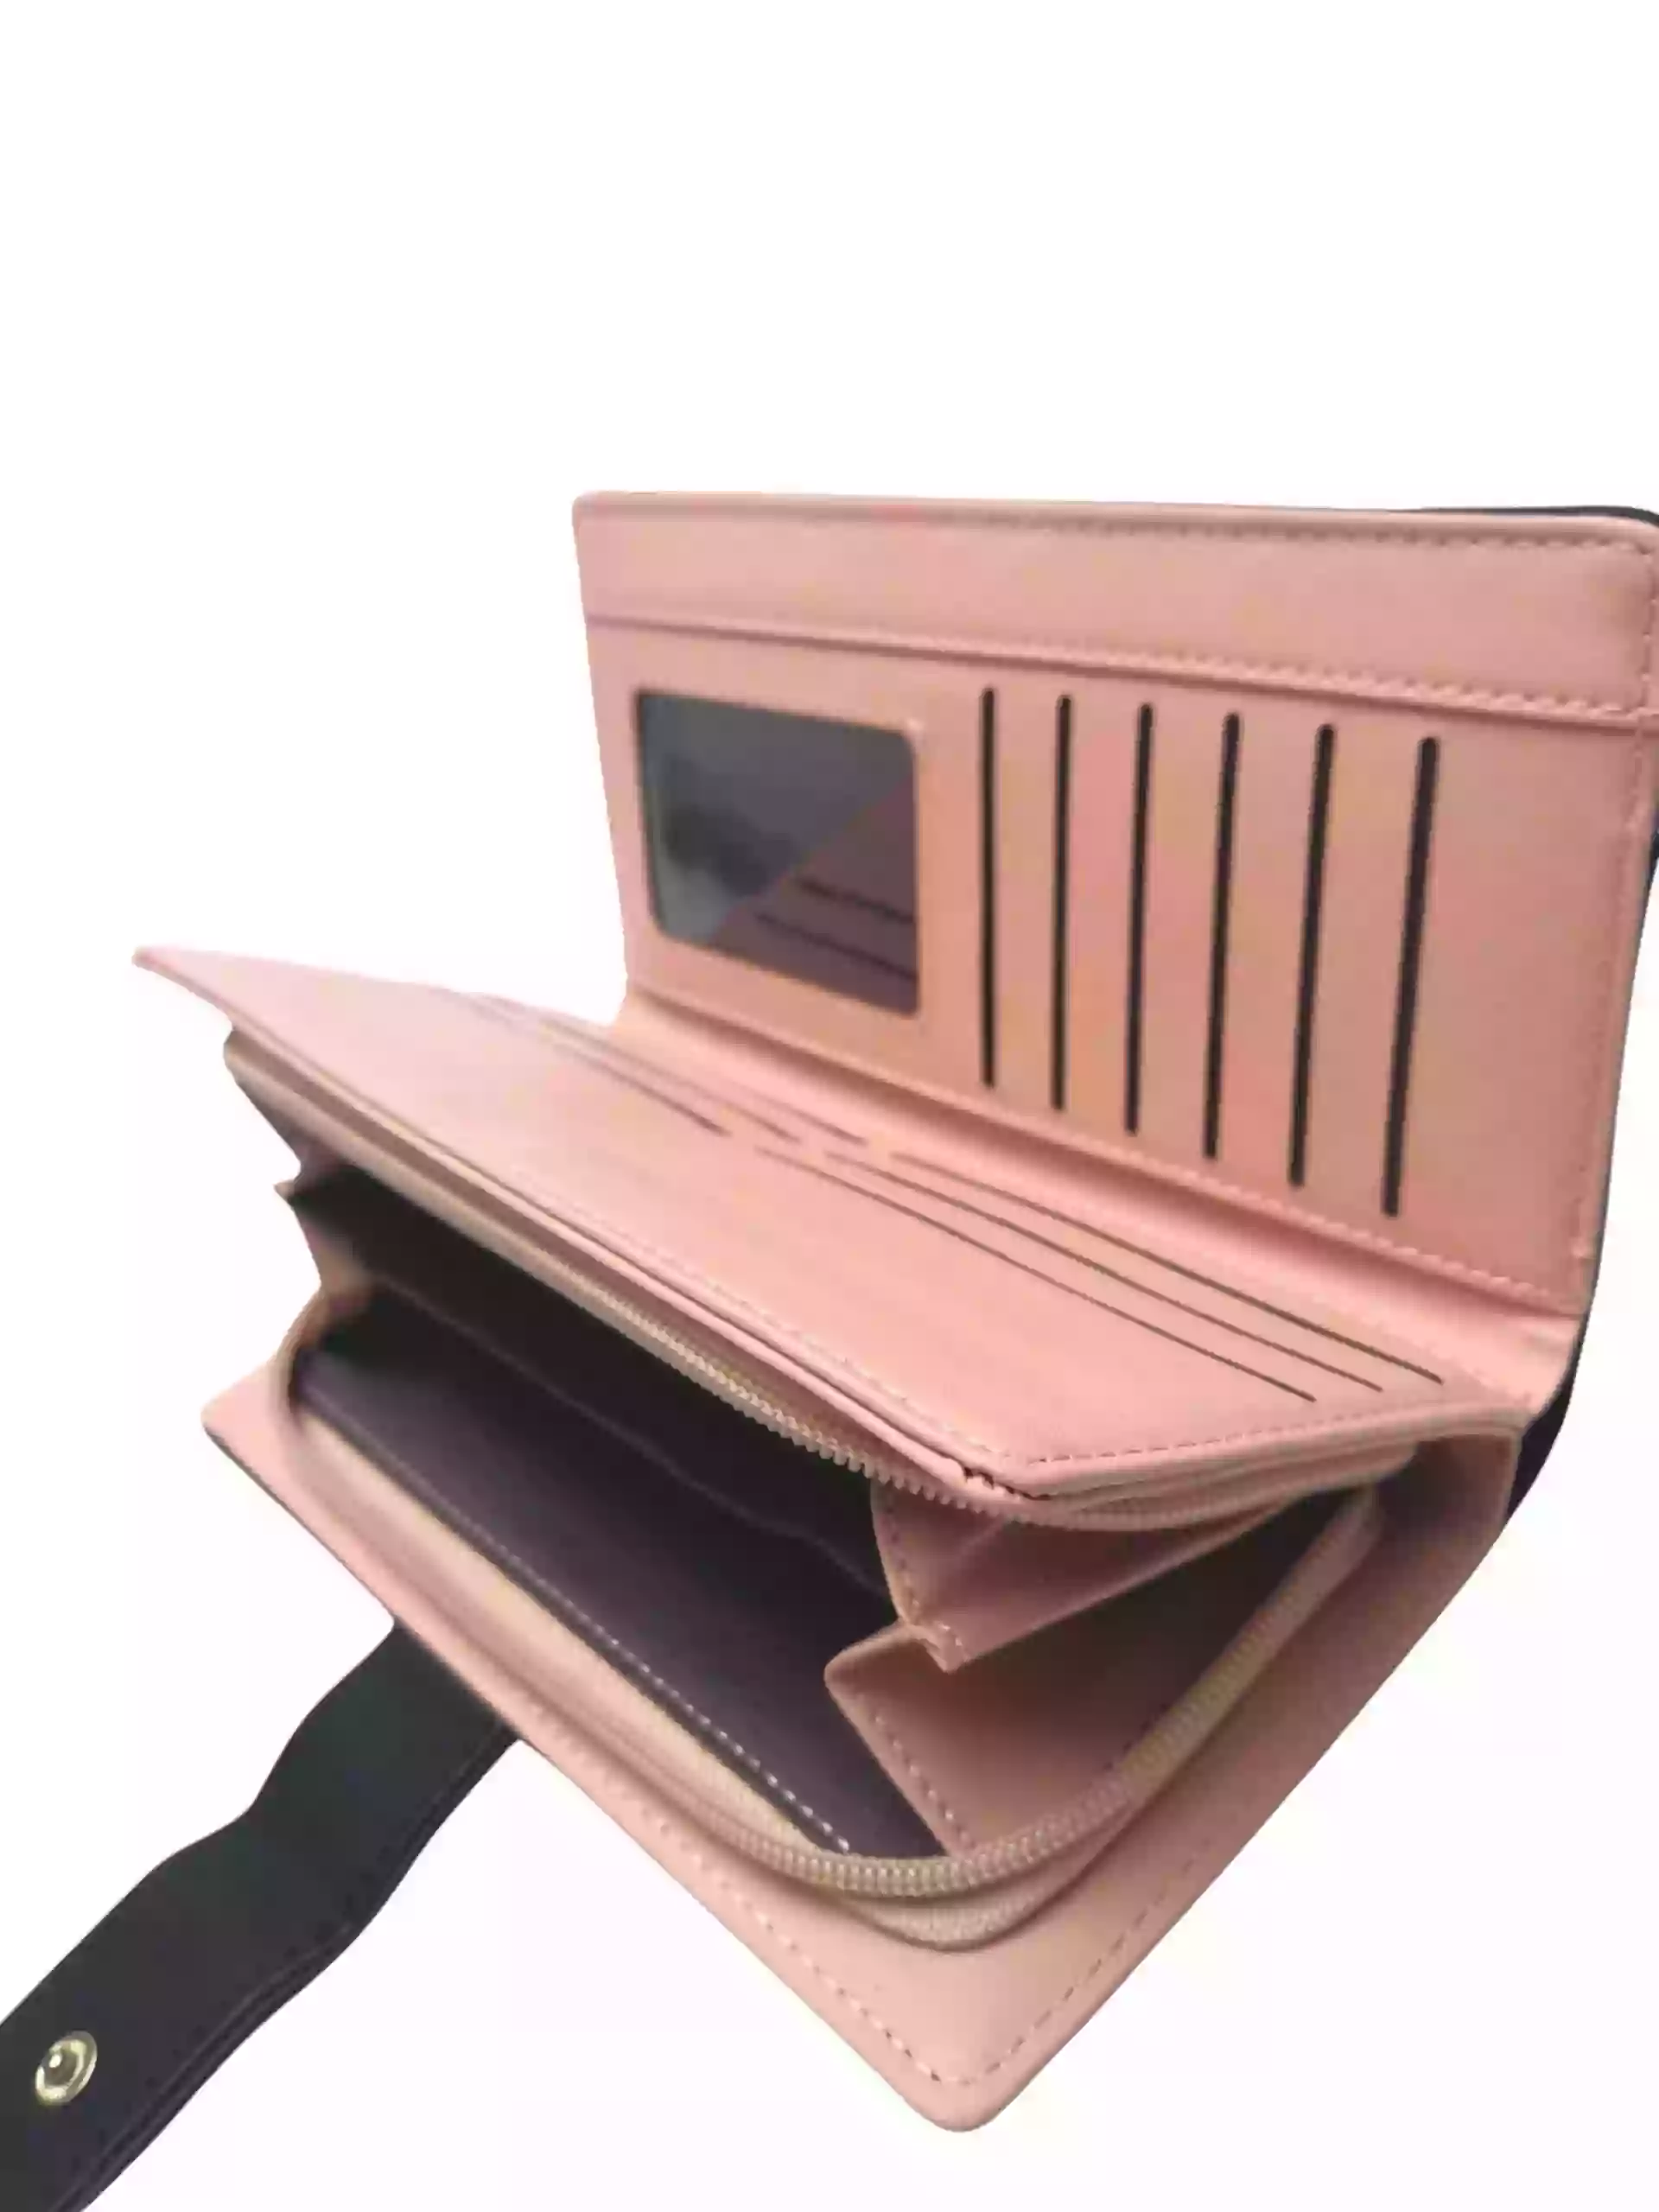 Černá dámská peněženka z broušené eko kůže, New Berry, DX-11, vnitřní uspořádání peněženky s rozepnutou kapsou